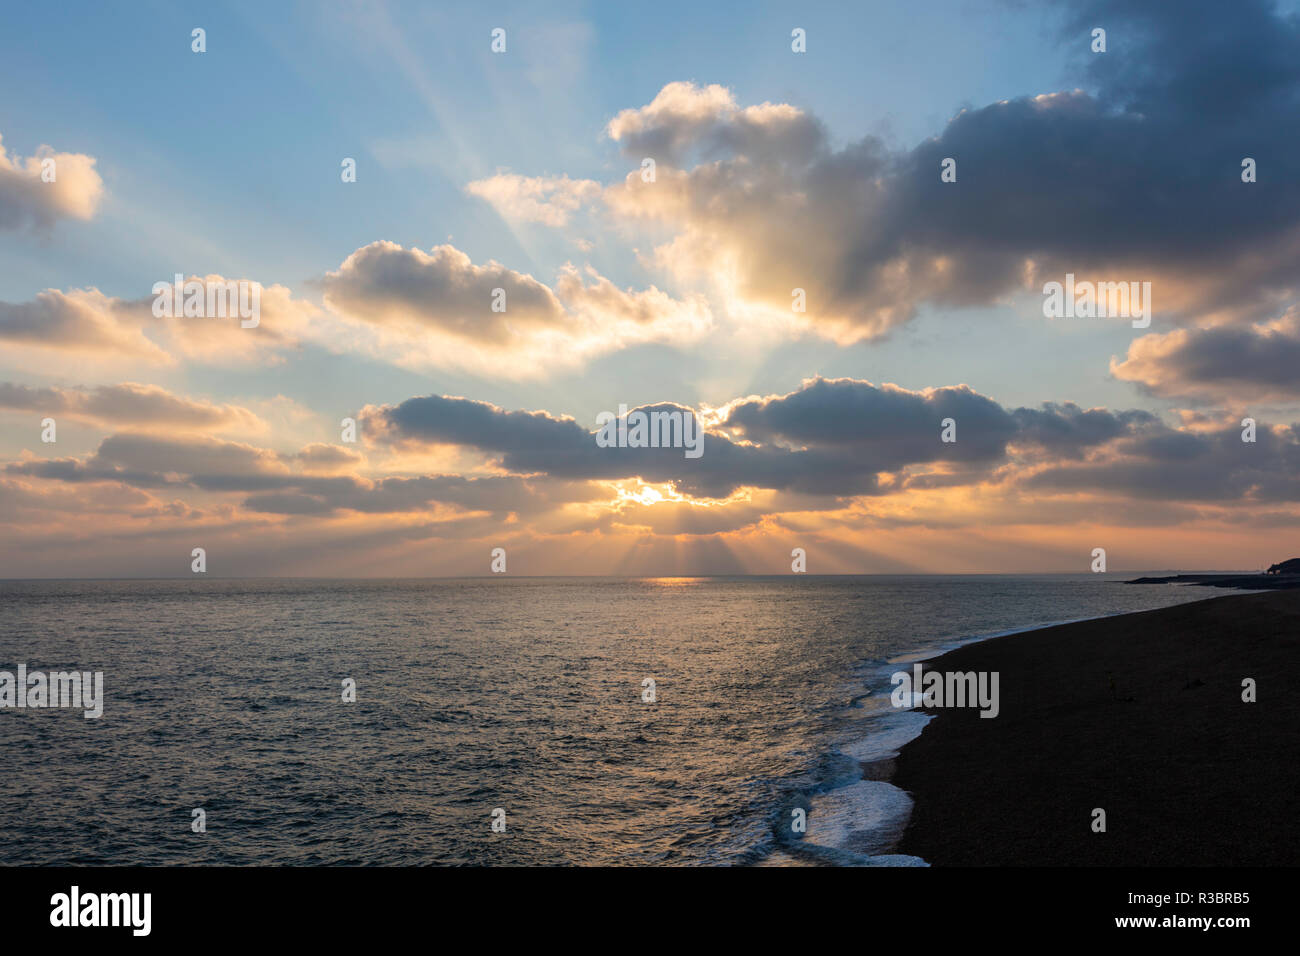 Rayons crépusculaires vu juste avant le coucher du soleil sur la Manche, au large de la côte de Folkestone, Kent, Royaume-Uni au cours du mois de novembre. Banque D'Images